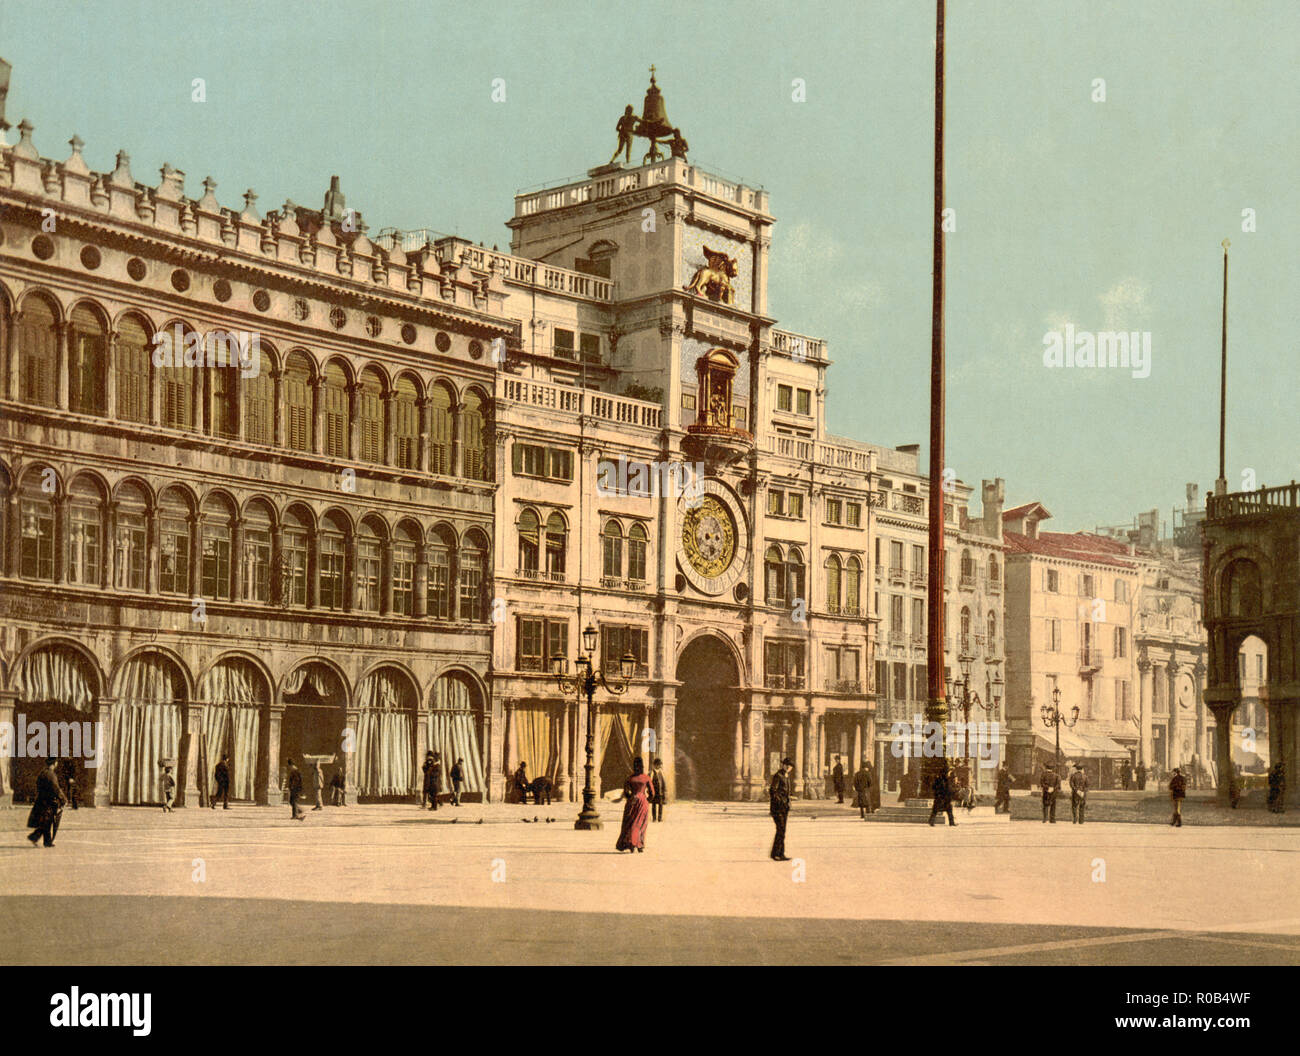 Tour de l'horloge, Piazzetta di San Marco, Venise, Italie, impression Photochrome, Detroit Publishing Company, 1900 Banque D'Images